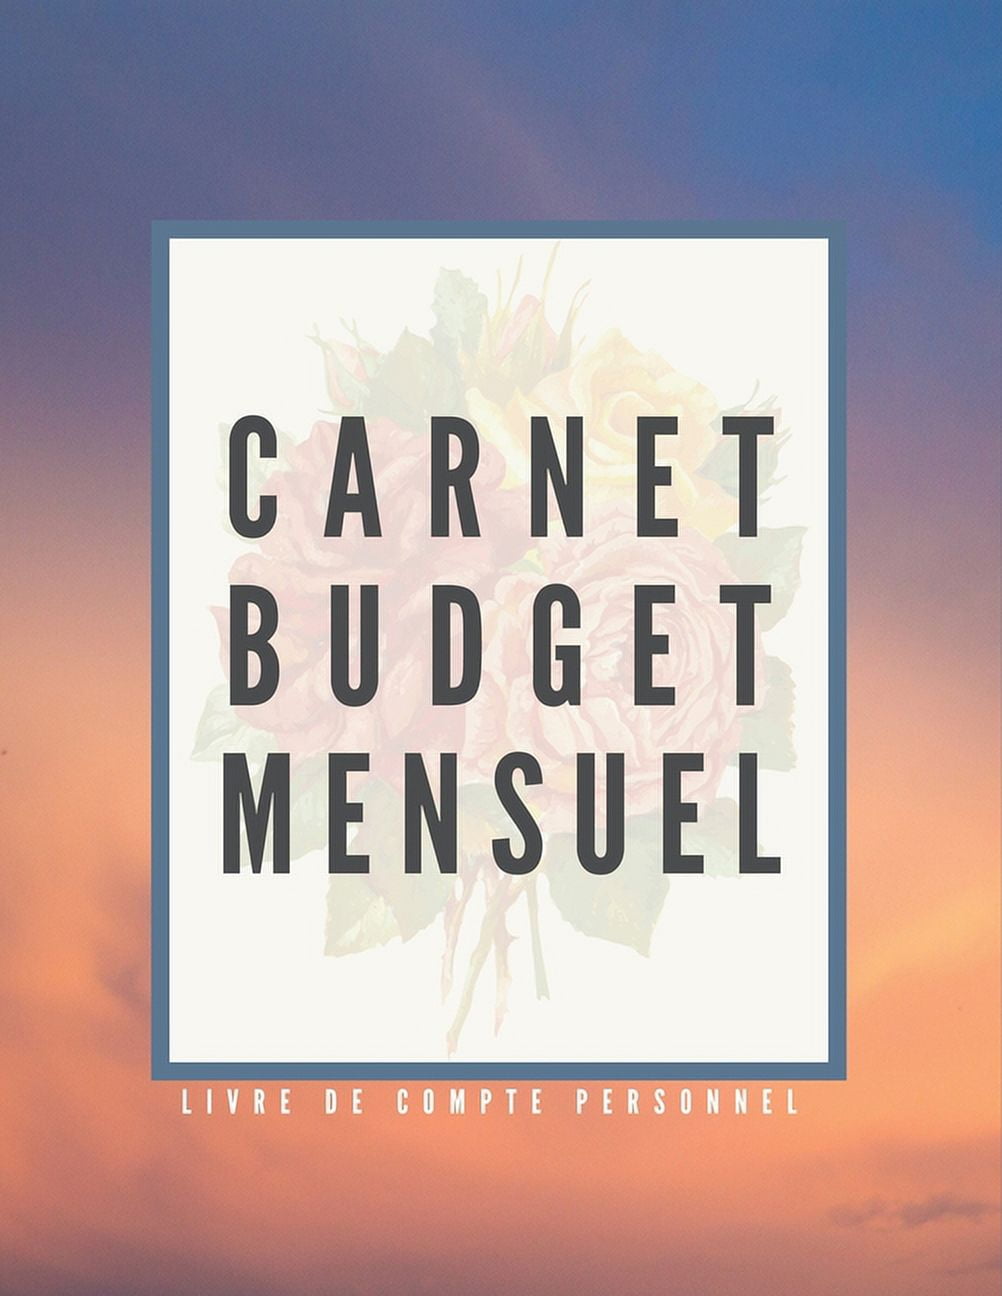 Carnet Budget Mensuel : Livre De Compte Et Planificateur De Budget Mensuel  Et Annuel - Gestion De Vos Dépenses Et Revenus - Dim A4 - 60 Pages  (Paperback) 